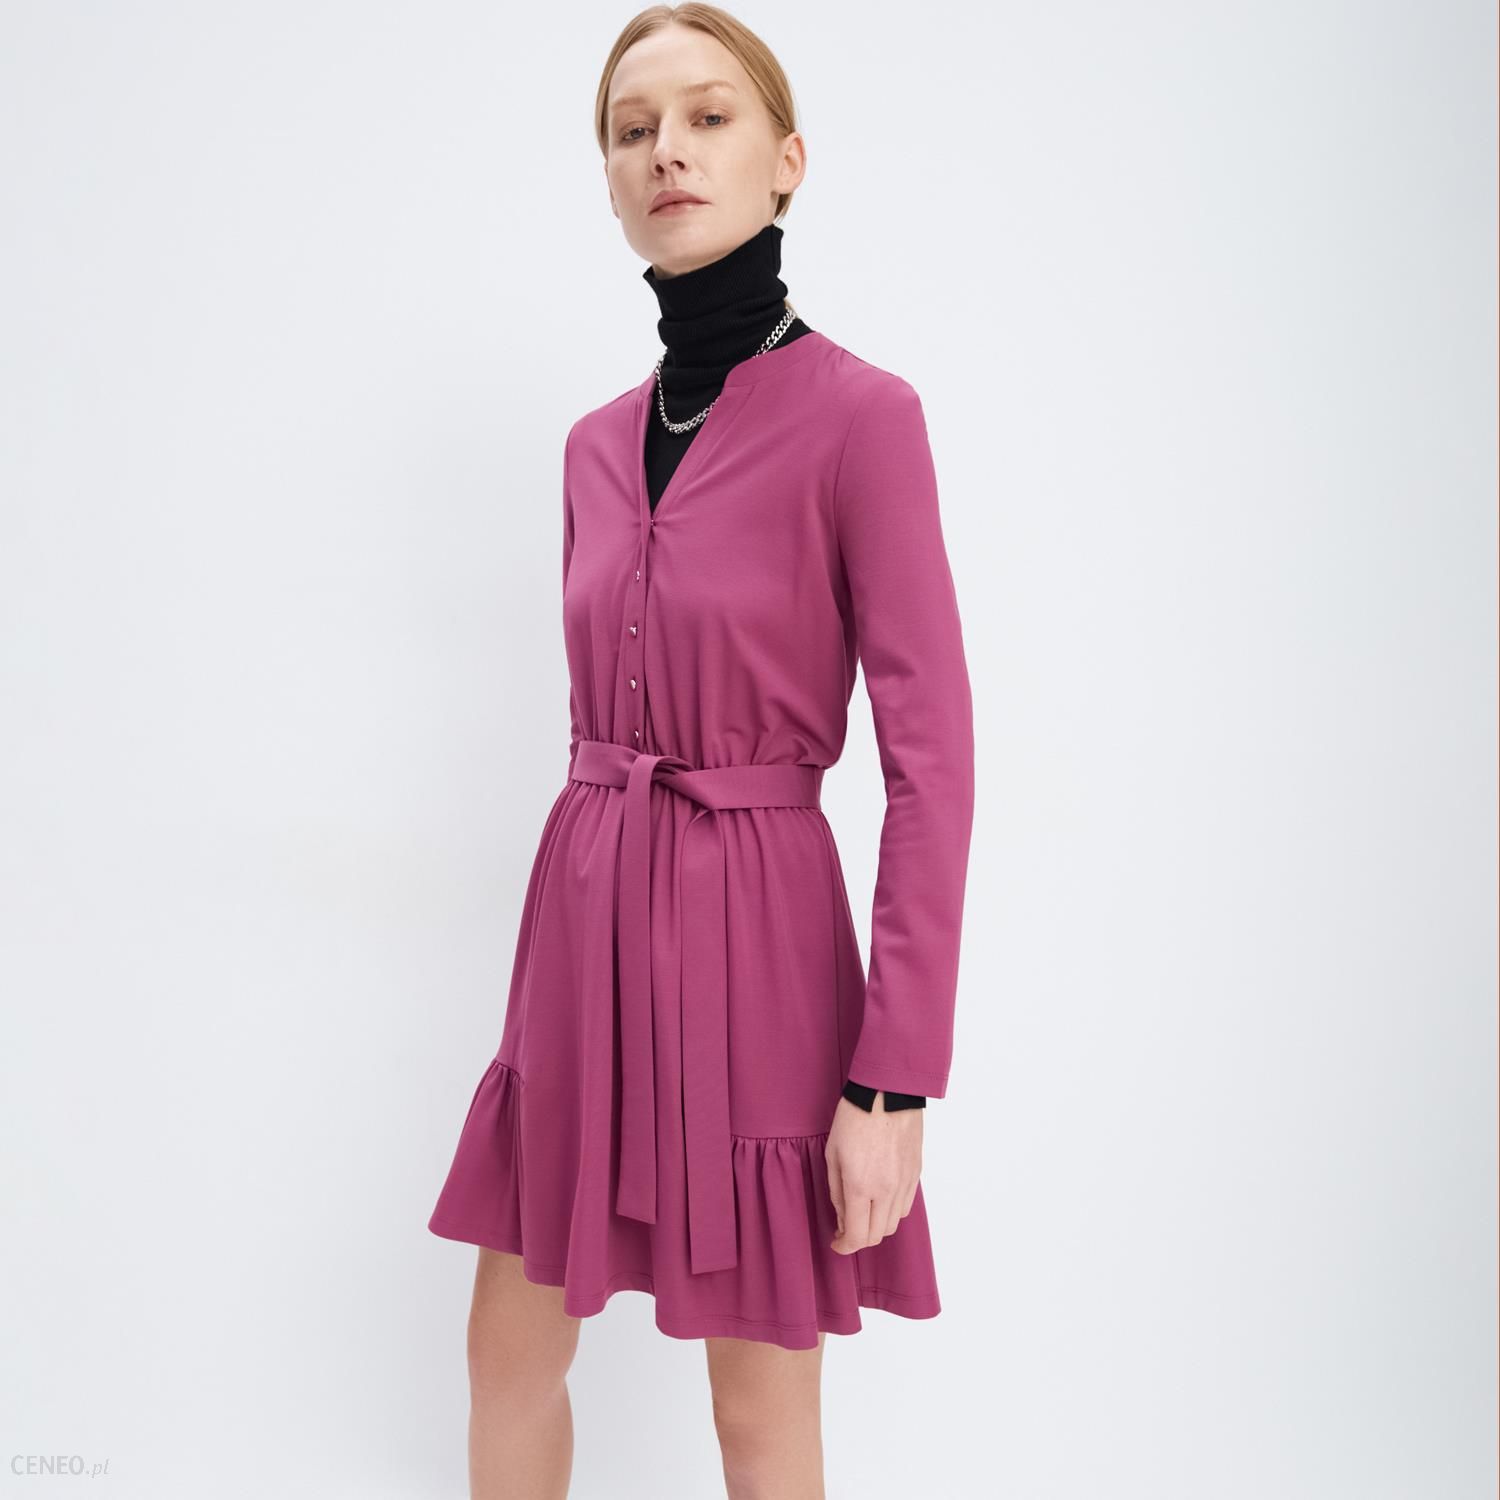 Mohito - Dzianinowa sukienka z wiązaniem w talii - Różowy - Ceny i opinie -  